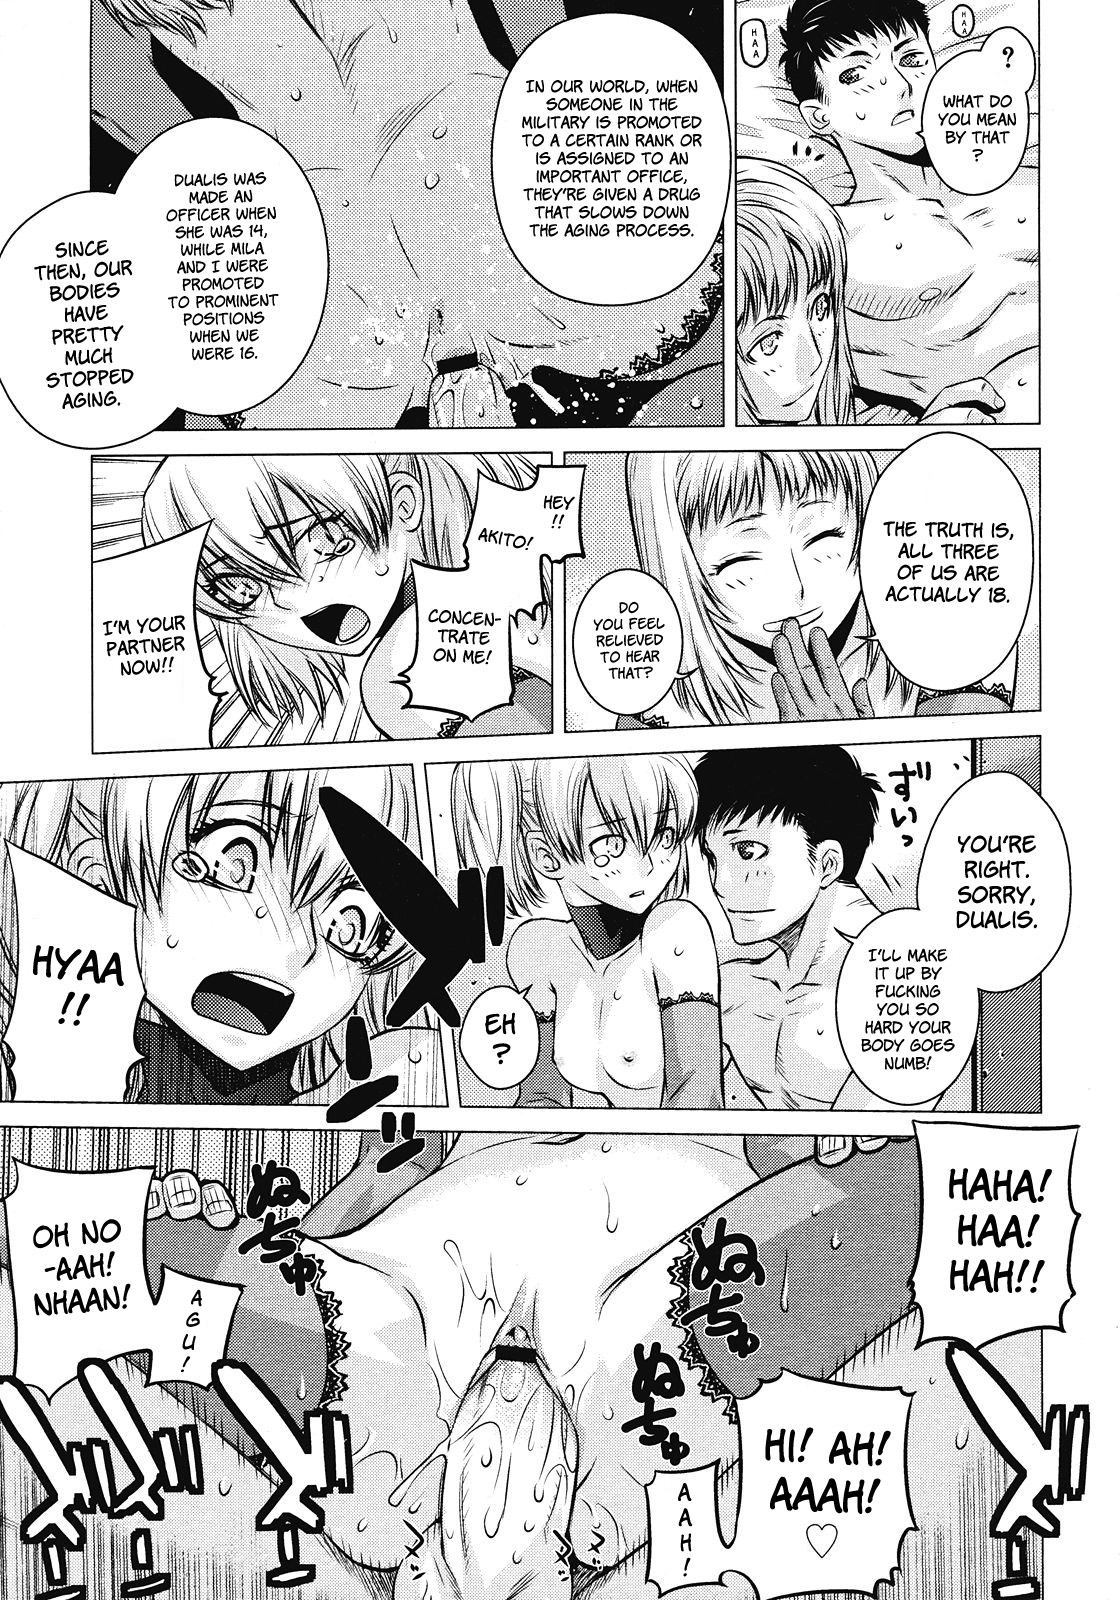 Angraecum 181 hentai manga